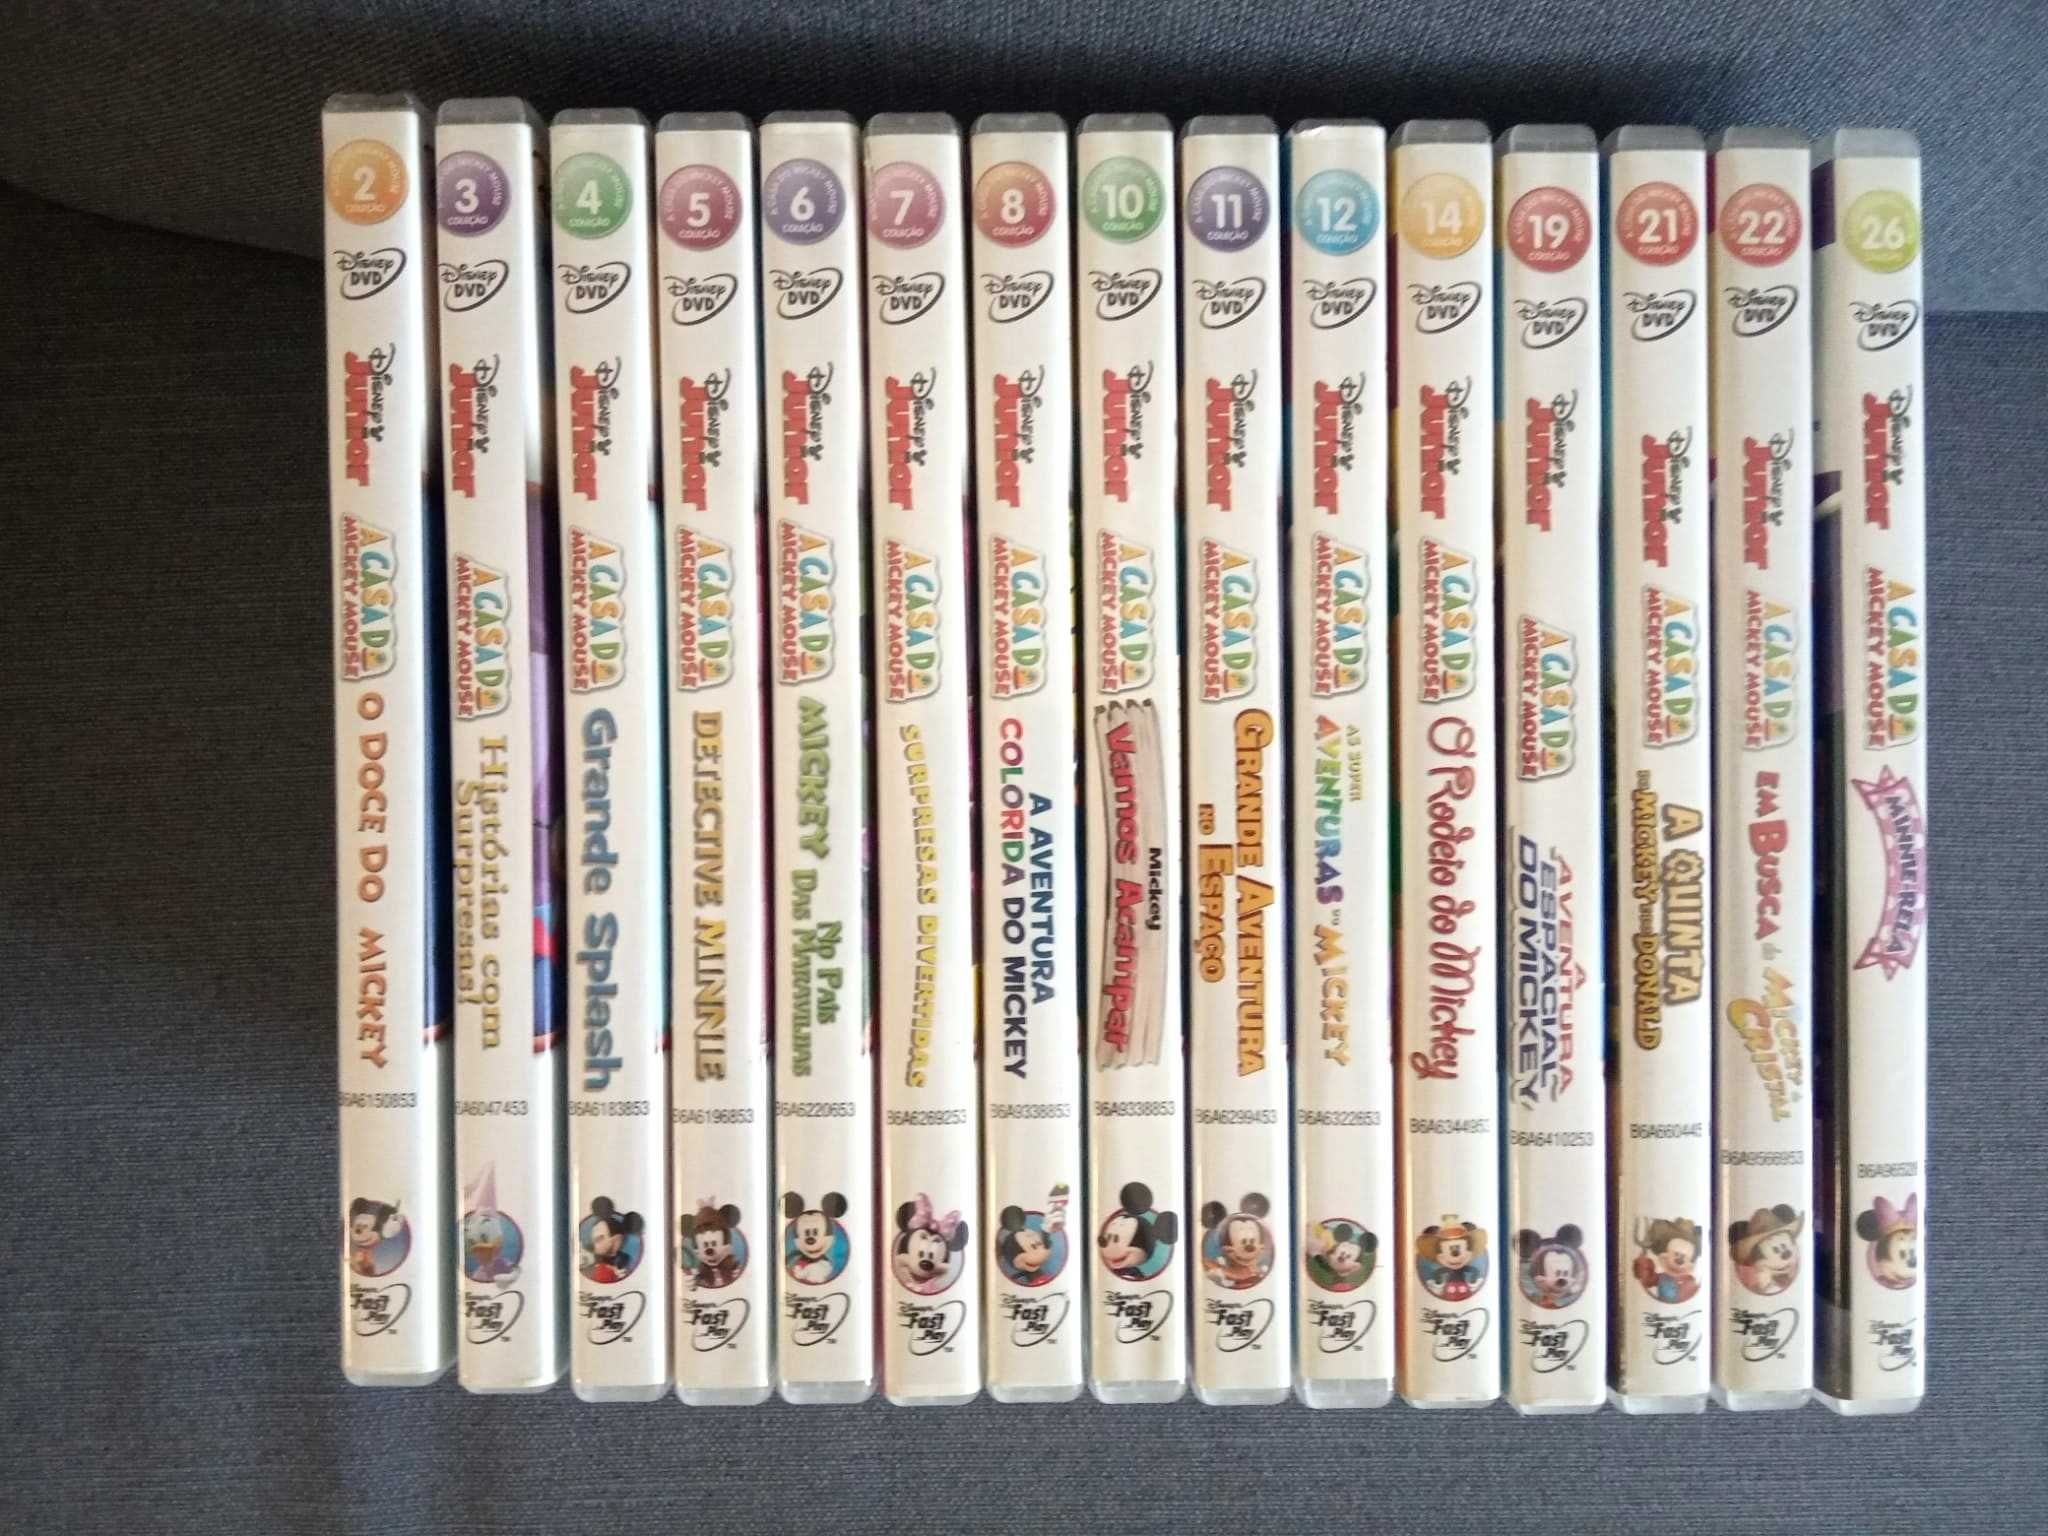 Coleção DVDs "A casa do Mickey Mouse"